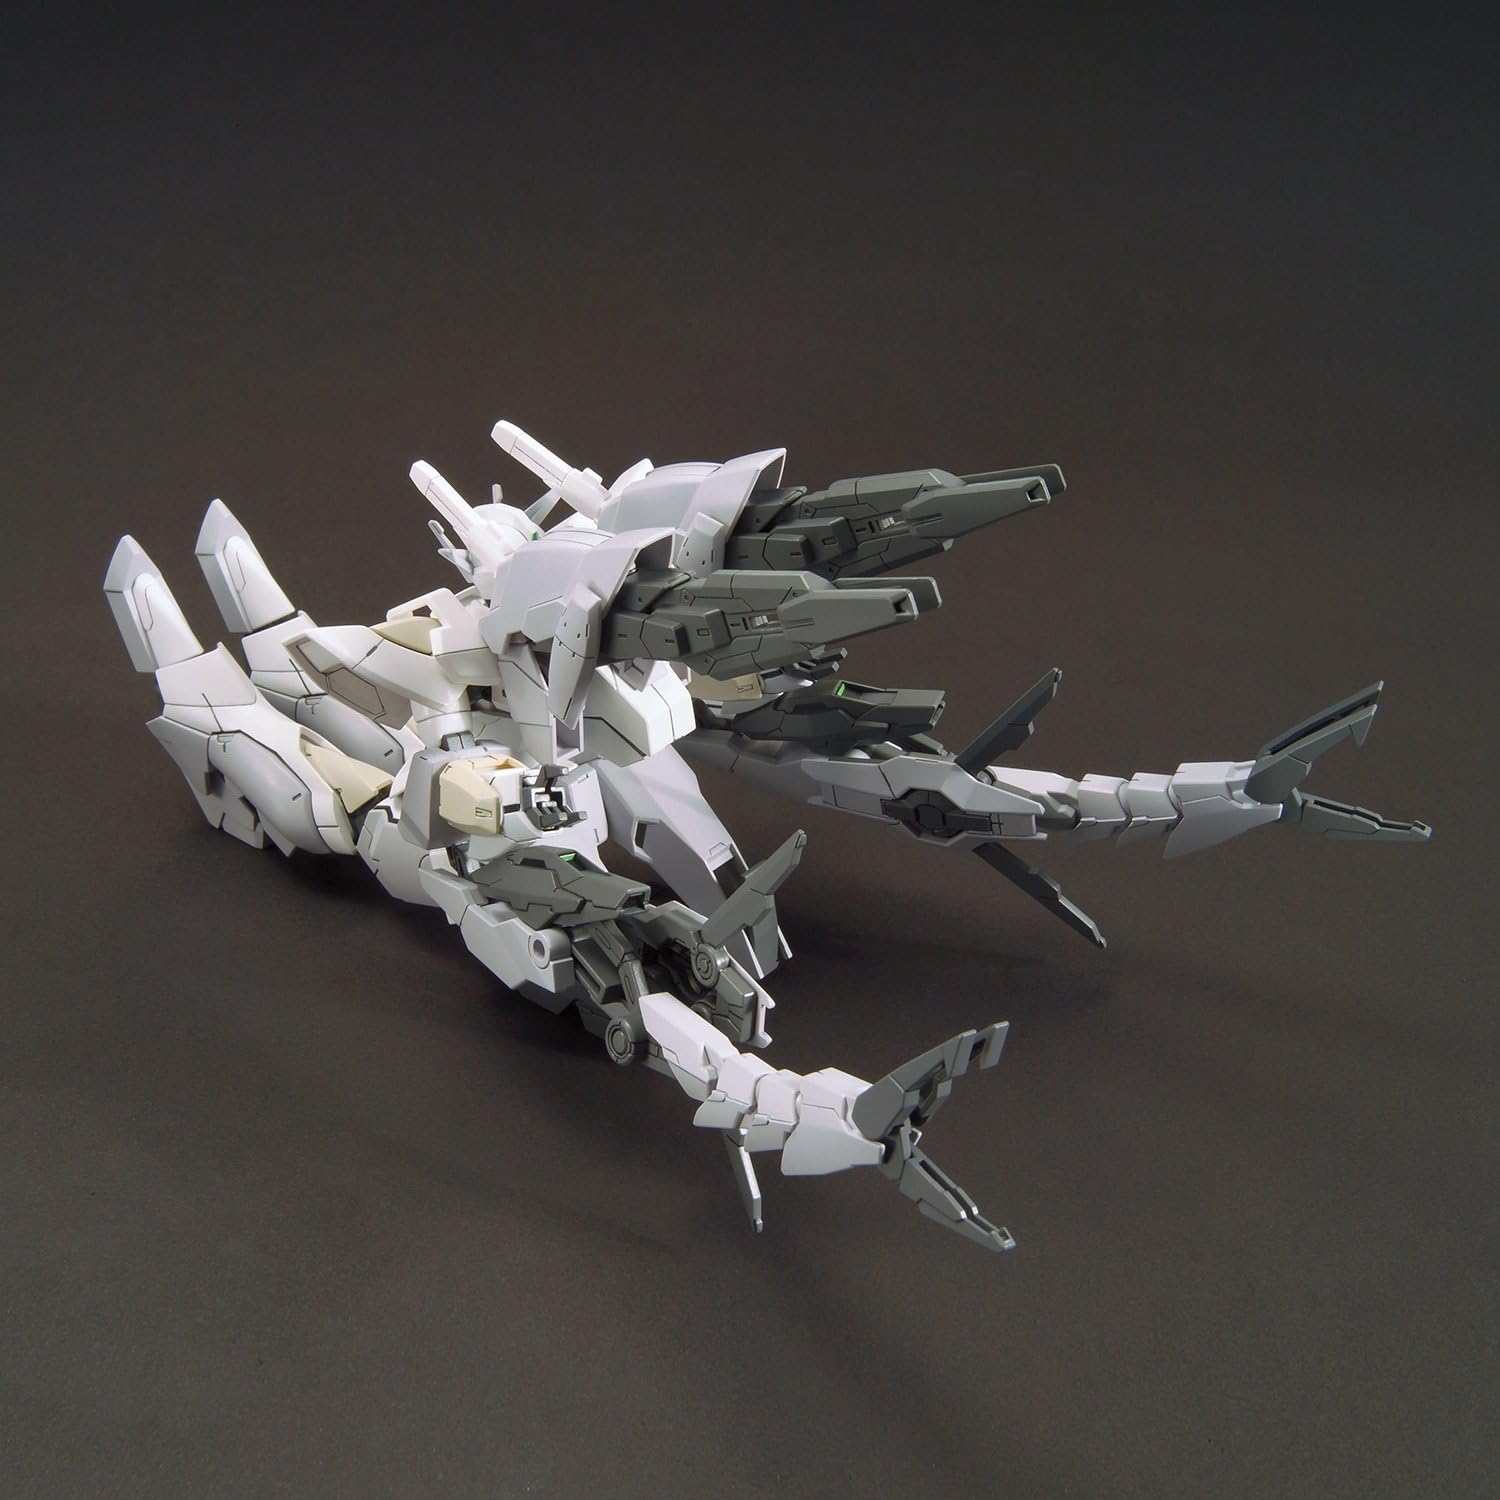 1/144 HGBF Reversible Gundam | animota